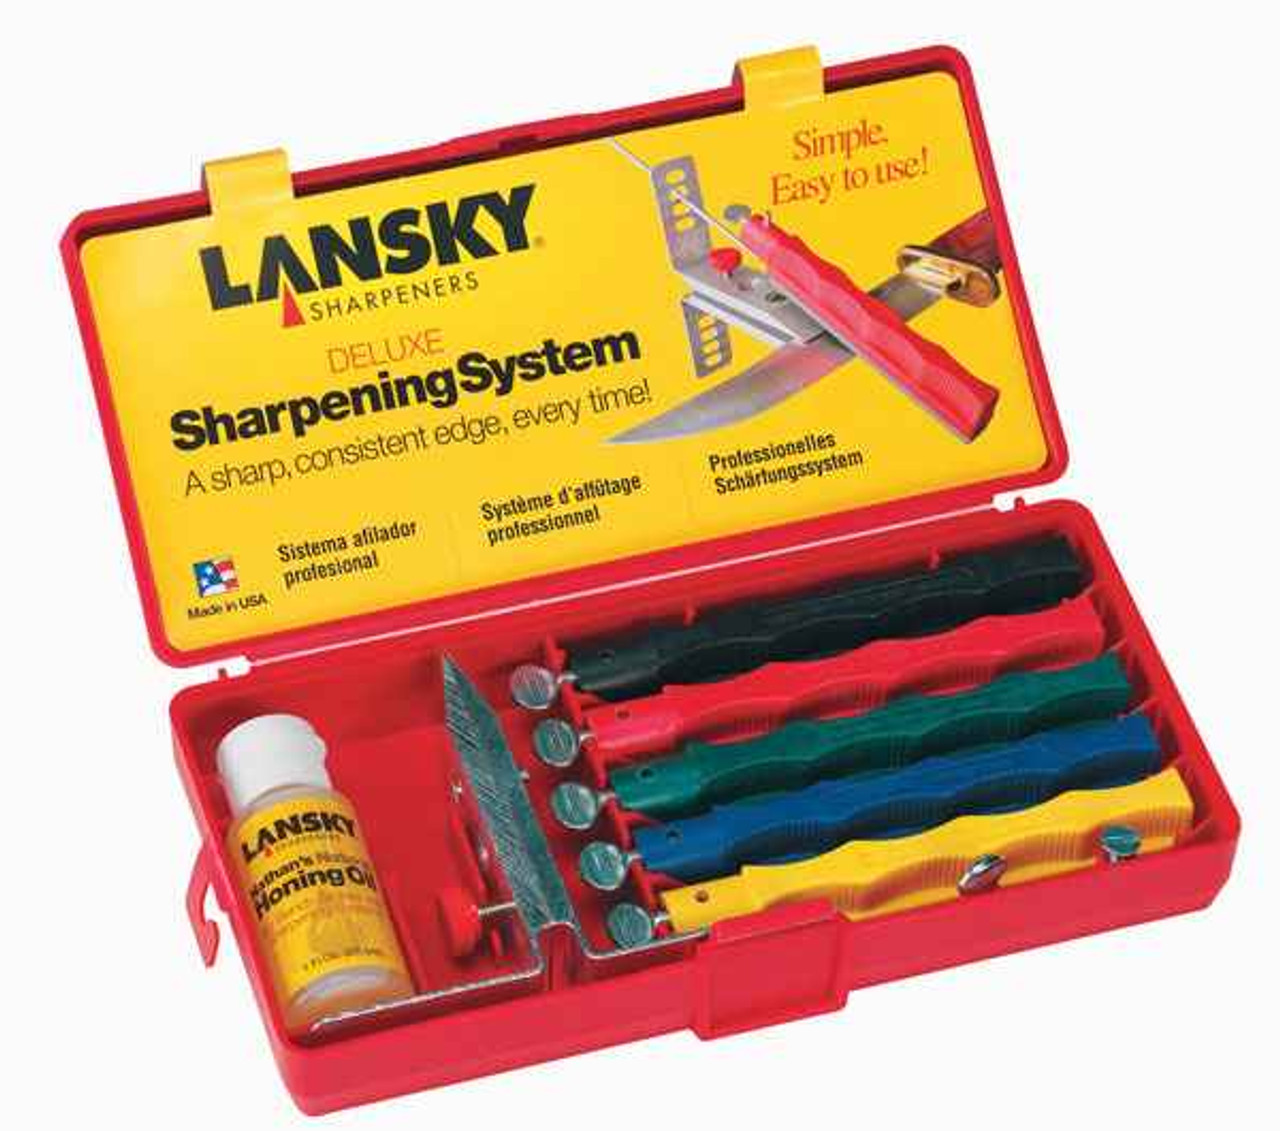 Lansky sharpener system